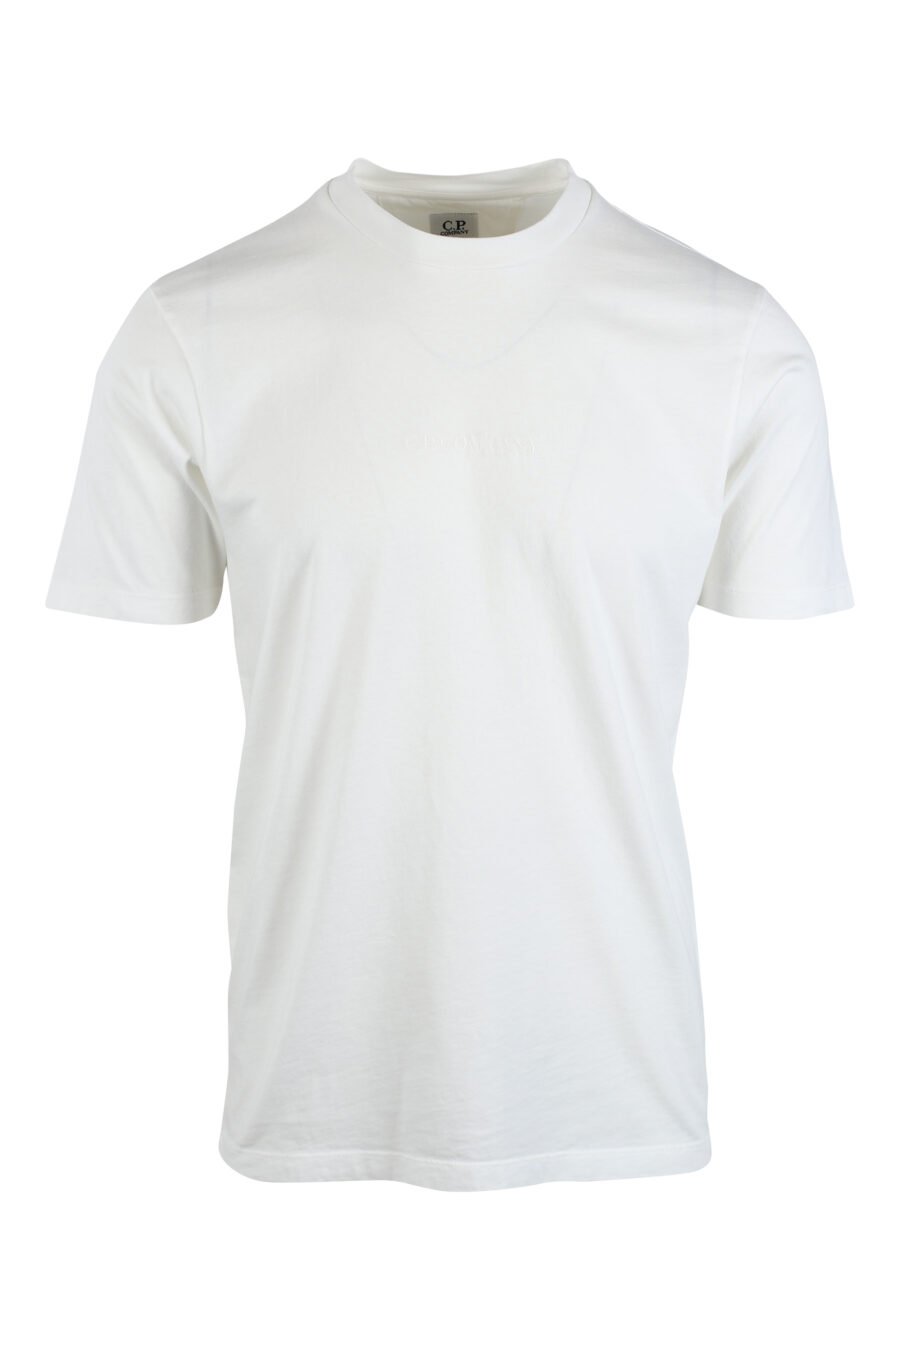 Camiseta blanco con minilogo central bordado y estampado gráfico detrás - IMG 2621